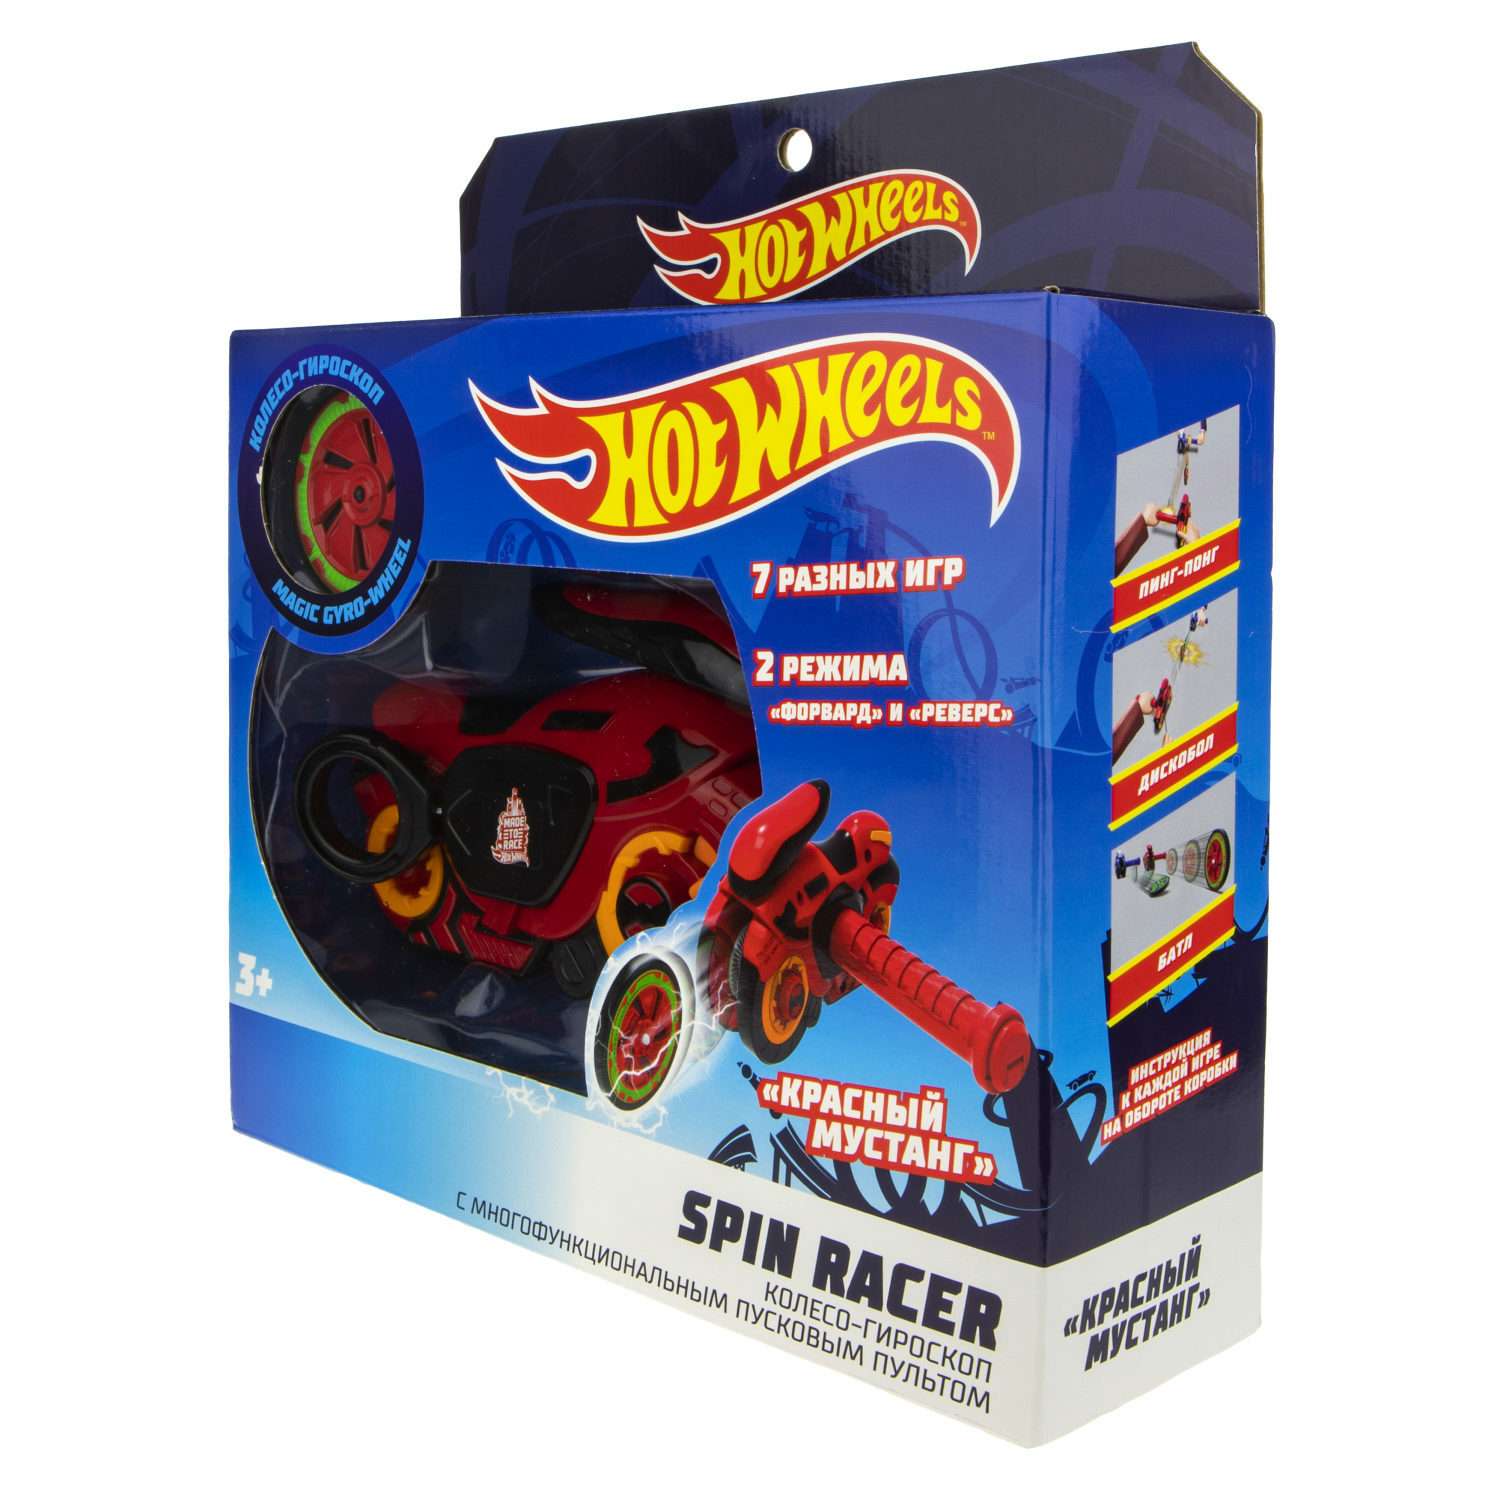 Игровой набор Hot Wheels Spin Racer Красный Мустанг игрушечный мотоцикл с колесом-гироскопом Т19372 - фото 12